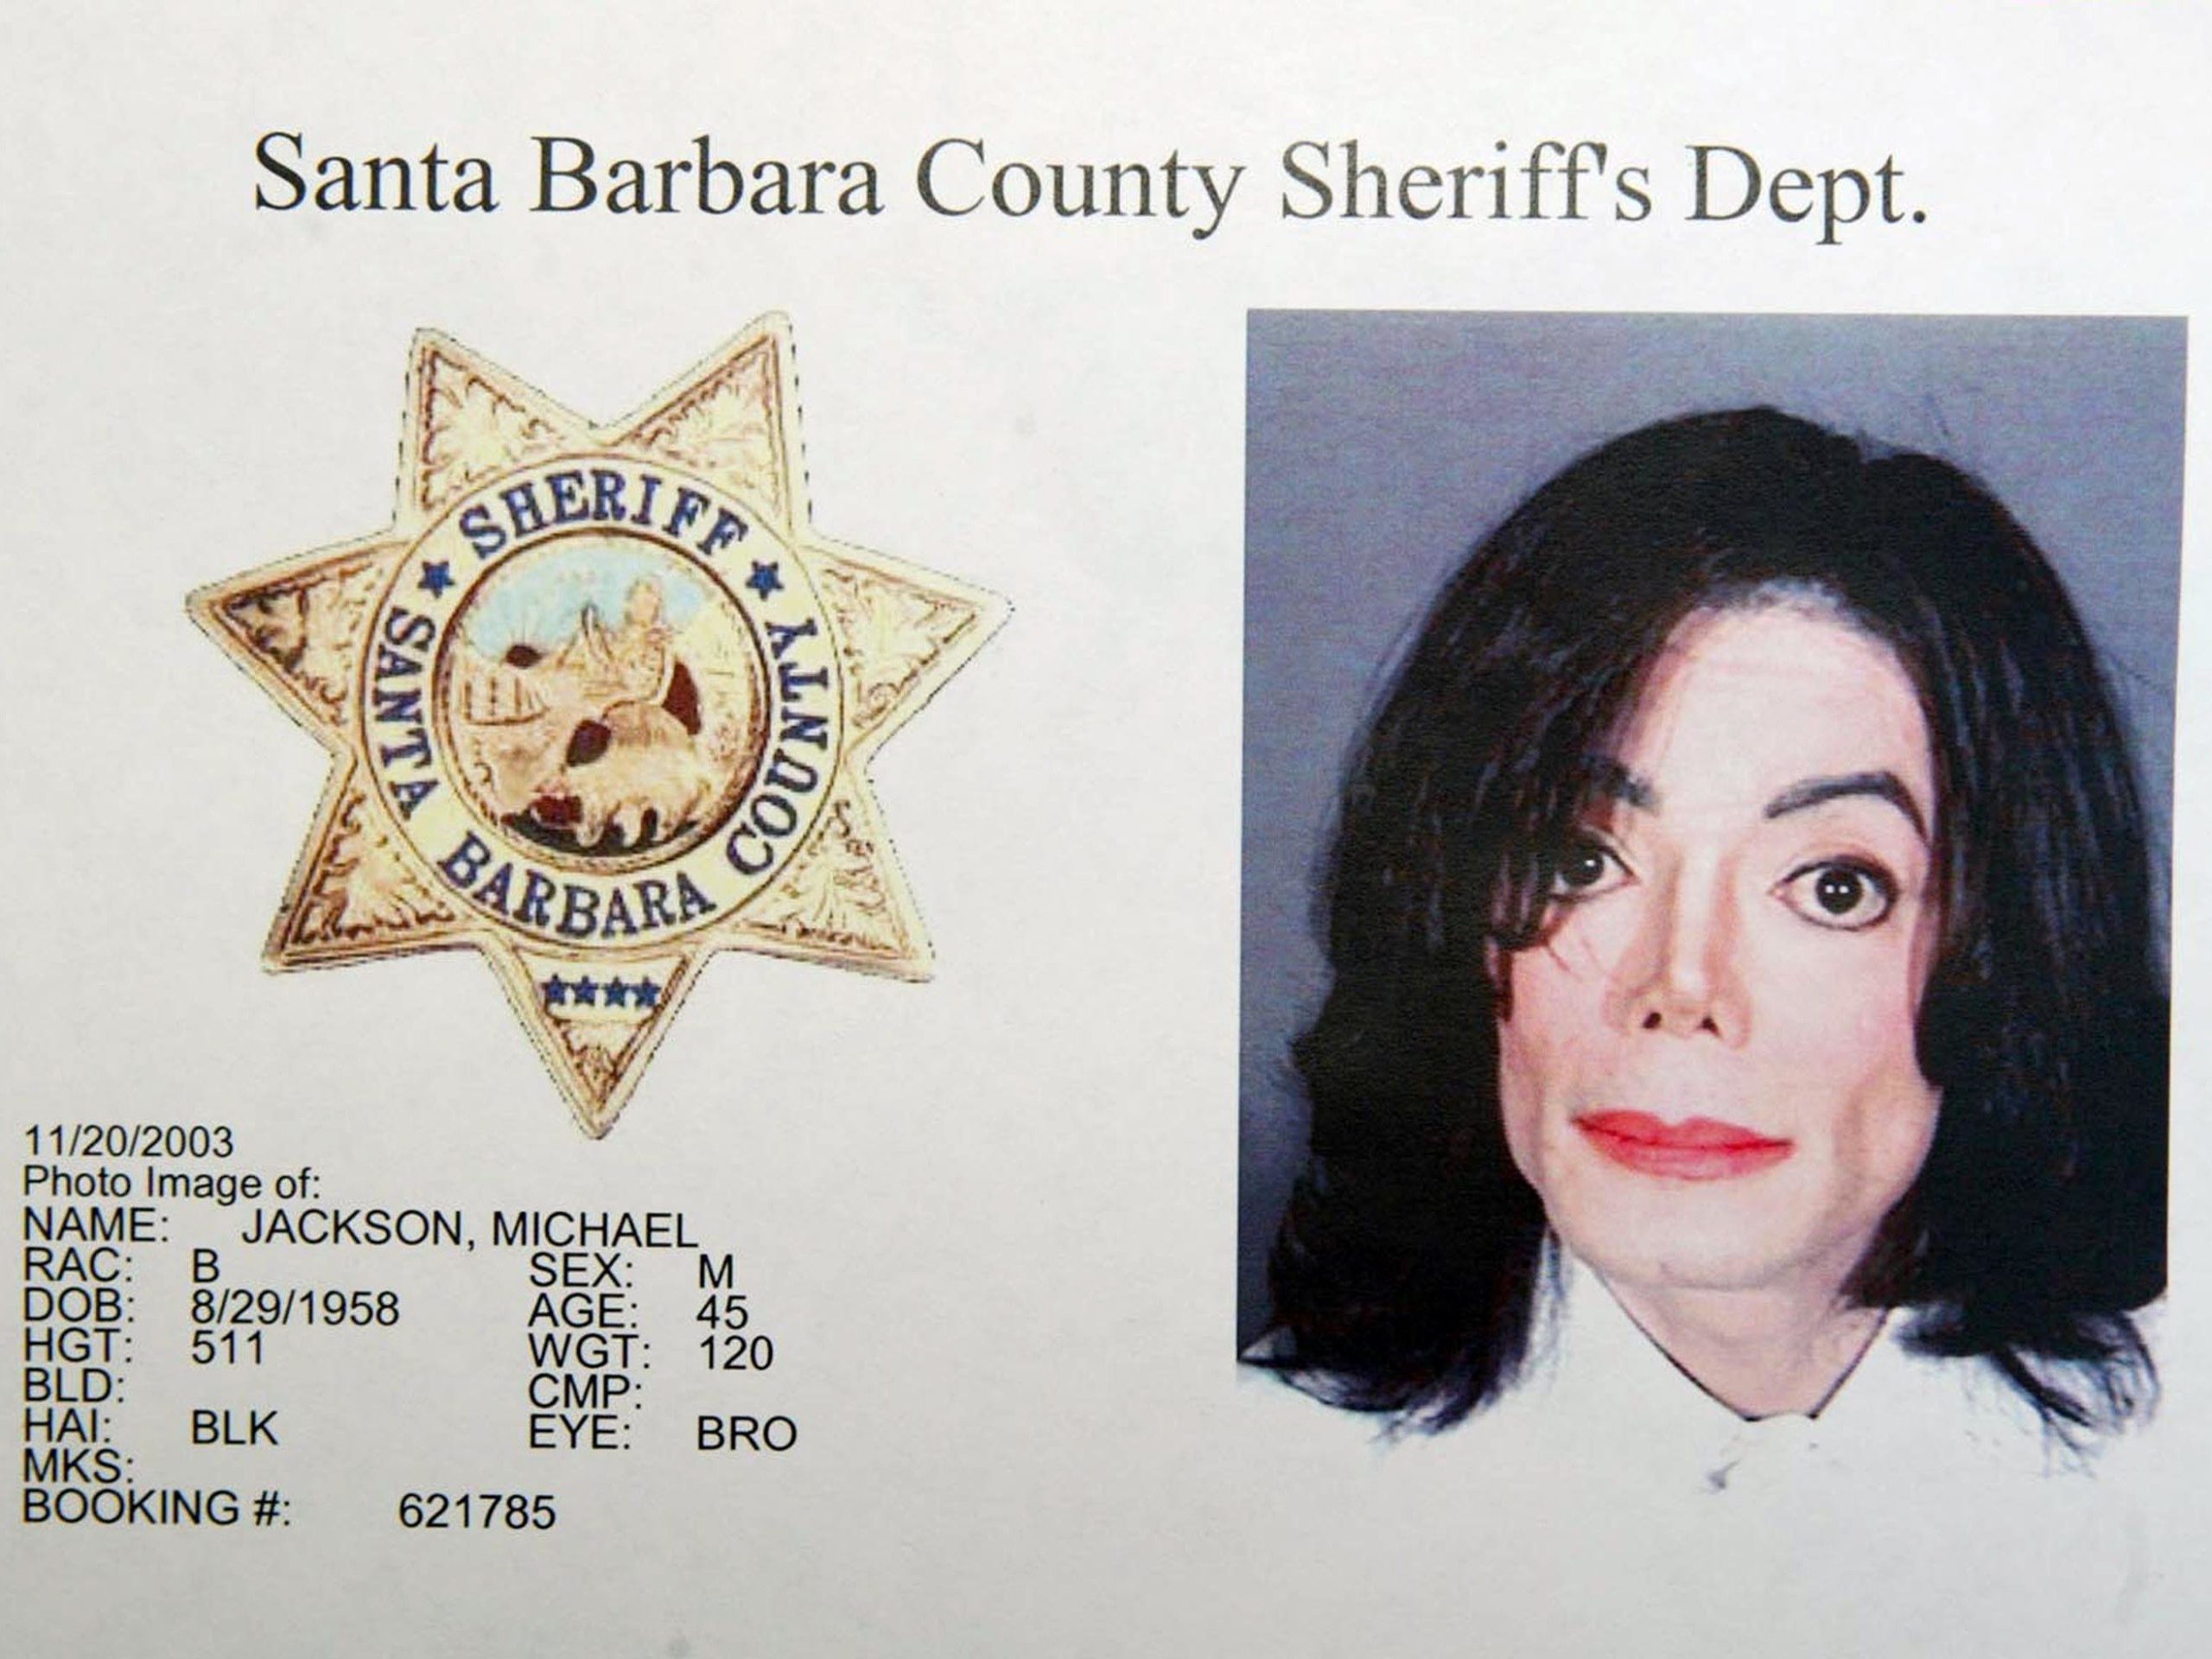  Procesele intentate lui Michael Jackson pentru abuzuri sexuale vor fi reluate